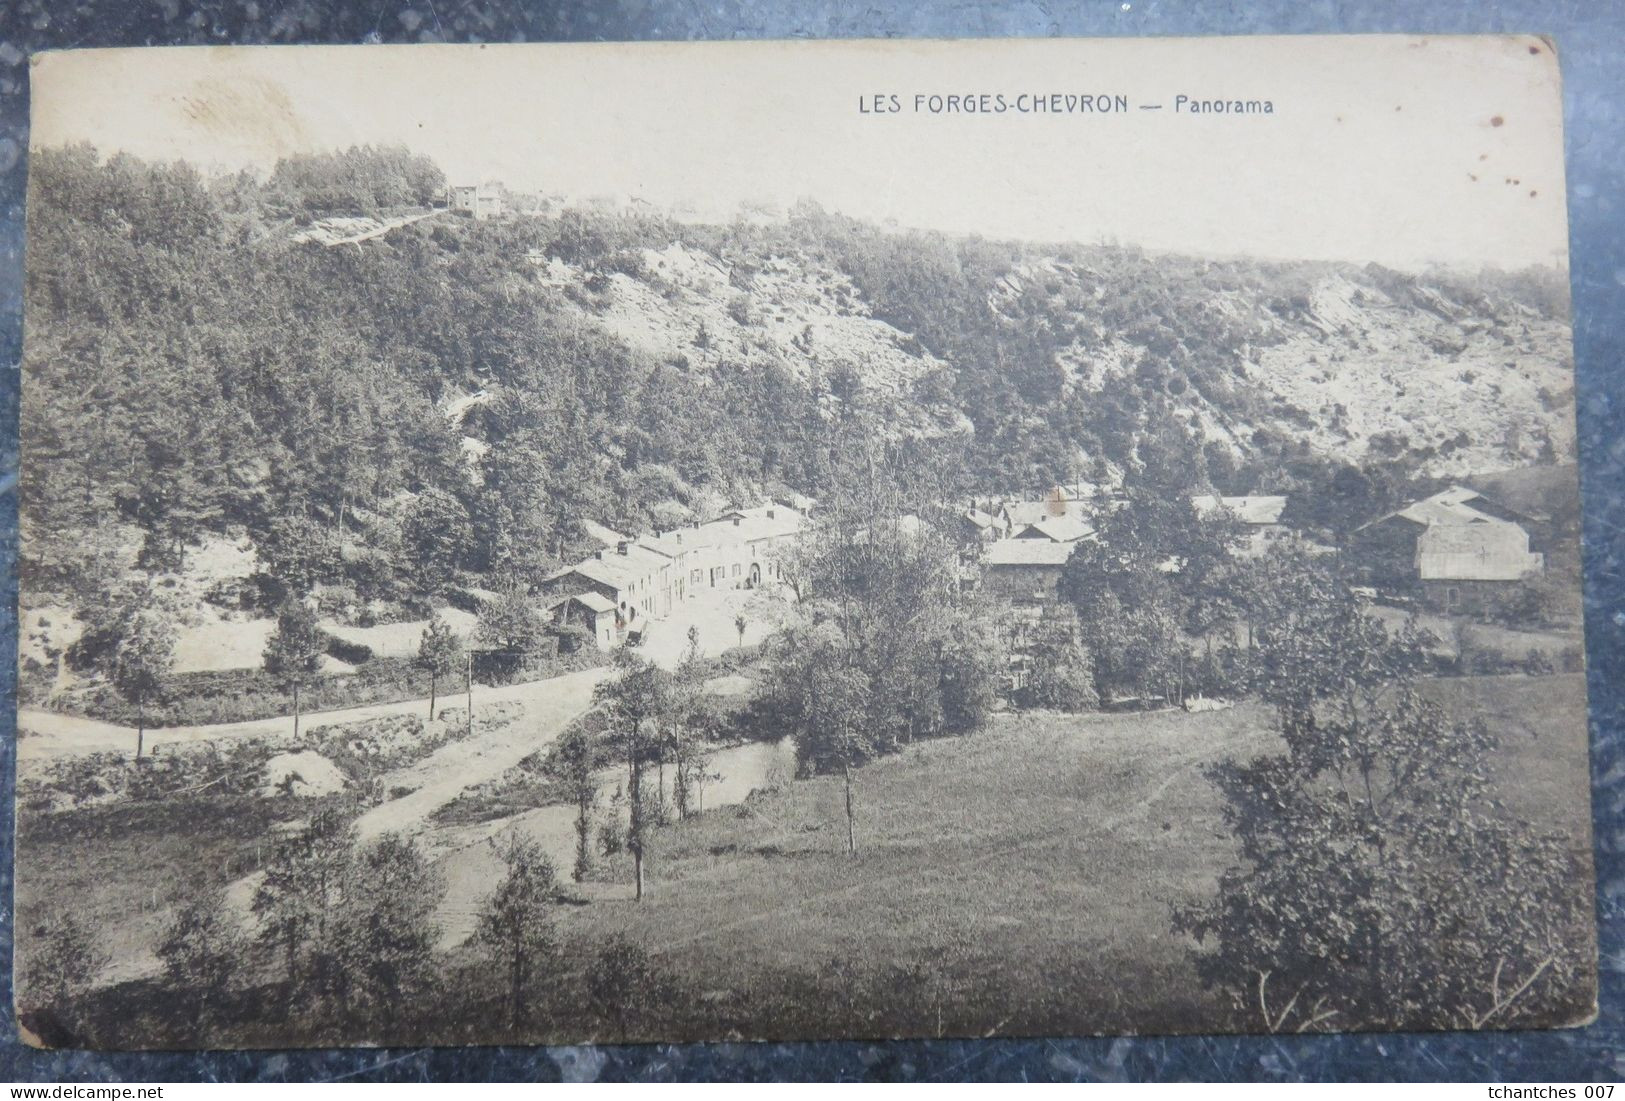 STOUMONT - CHEVRON - Les Forges CHEVRON - Panorama - Herstal - Stoumont